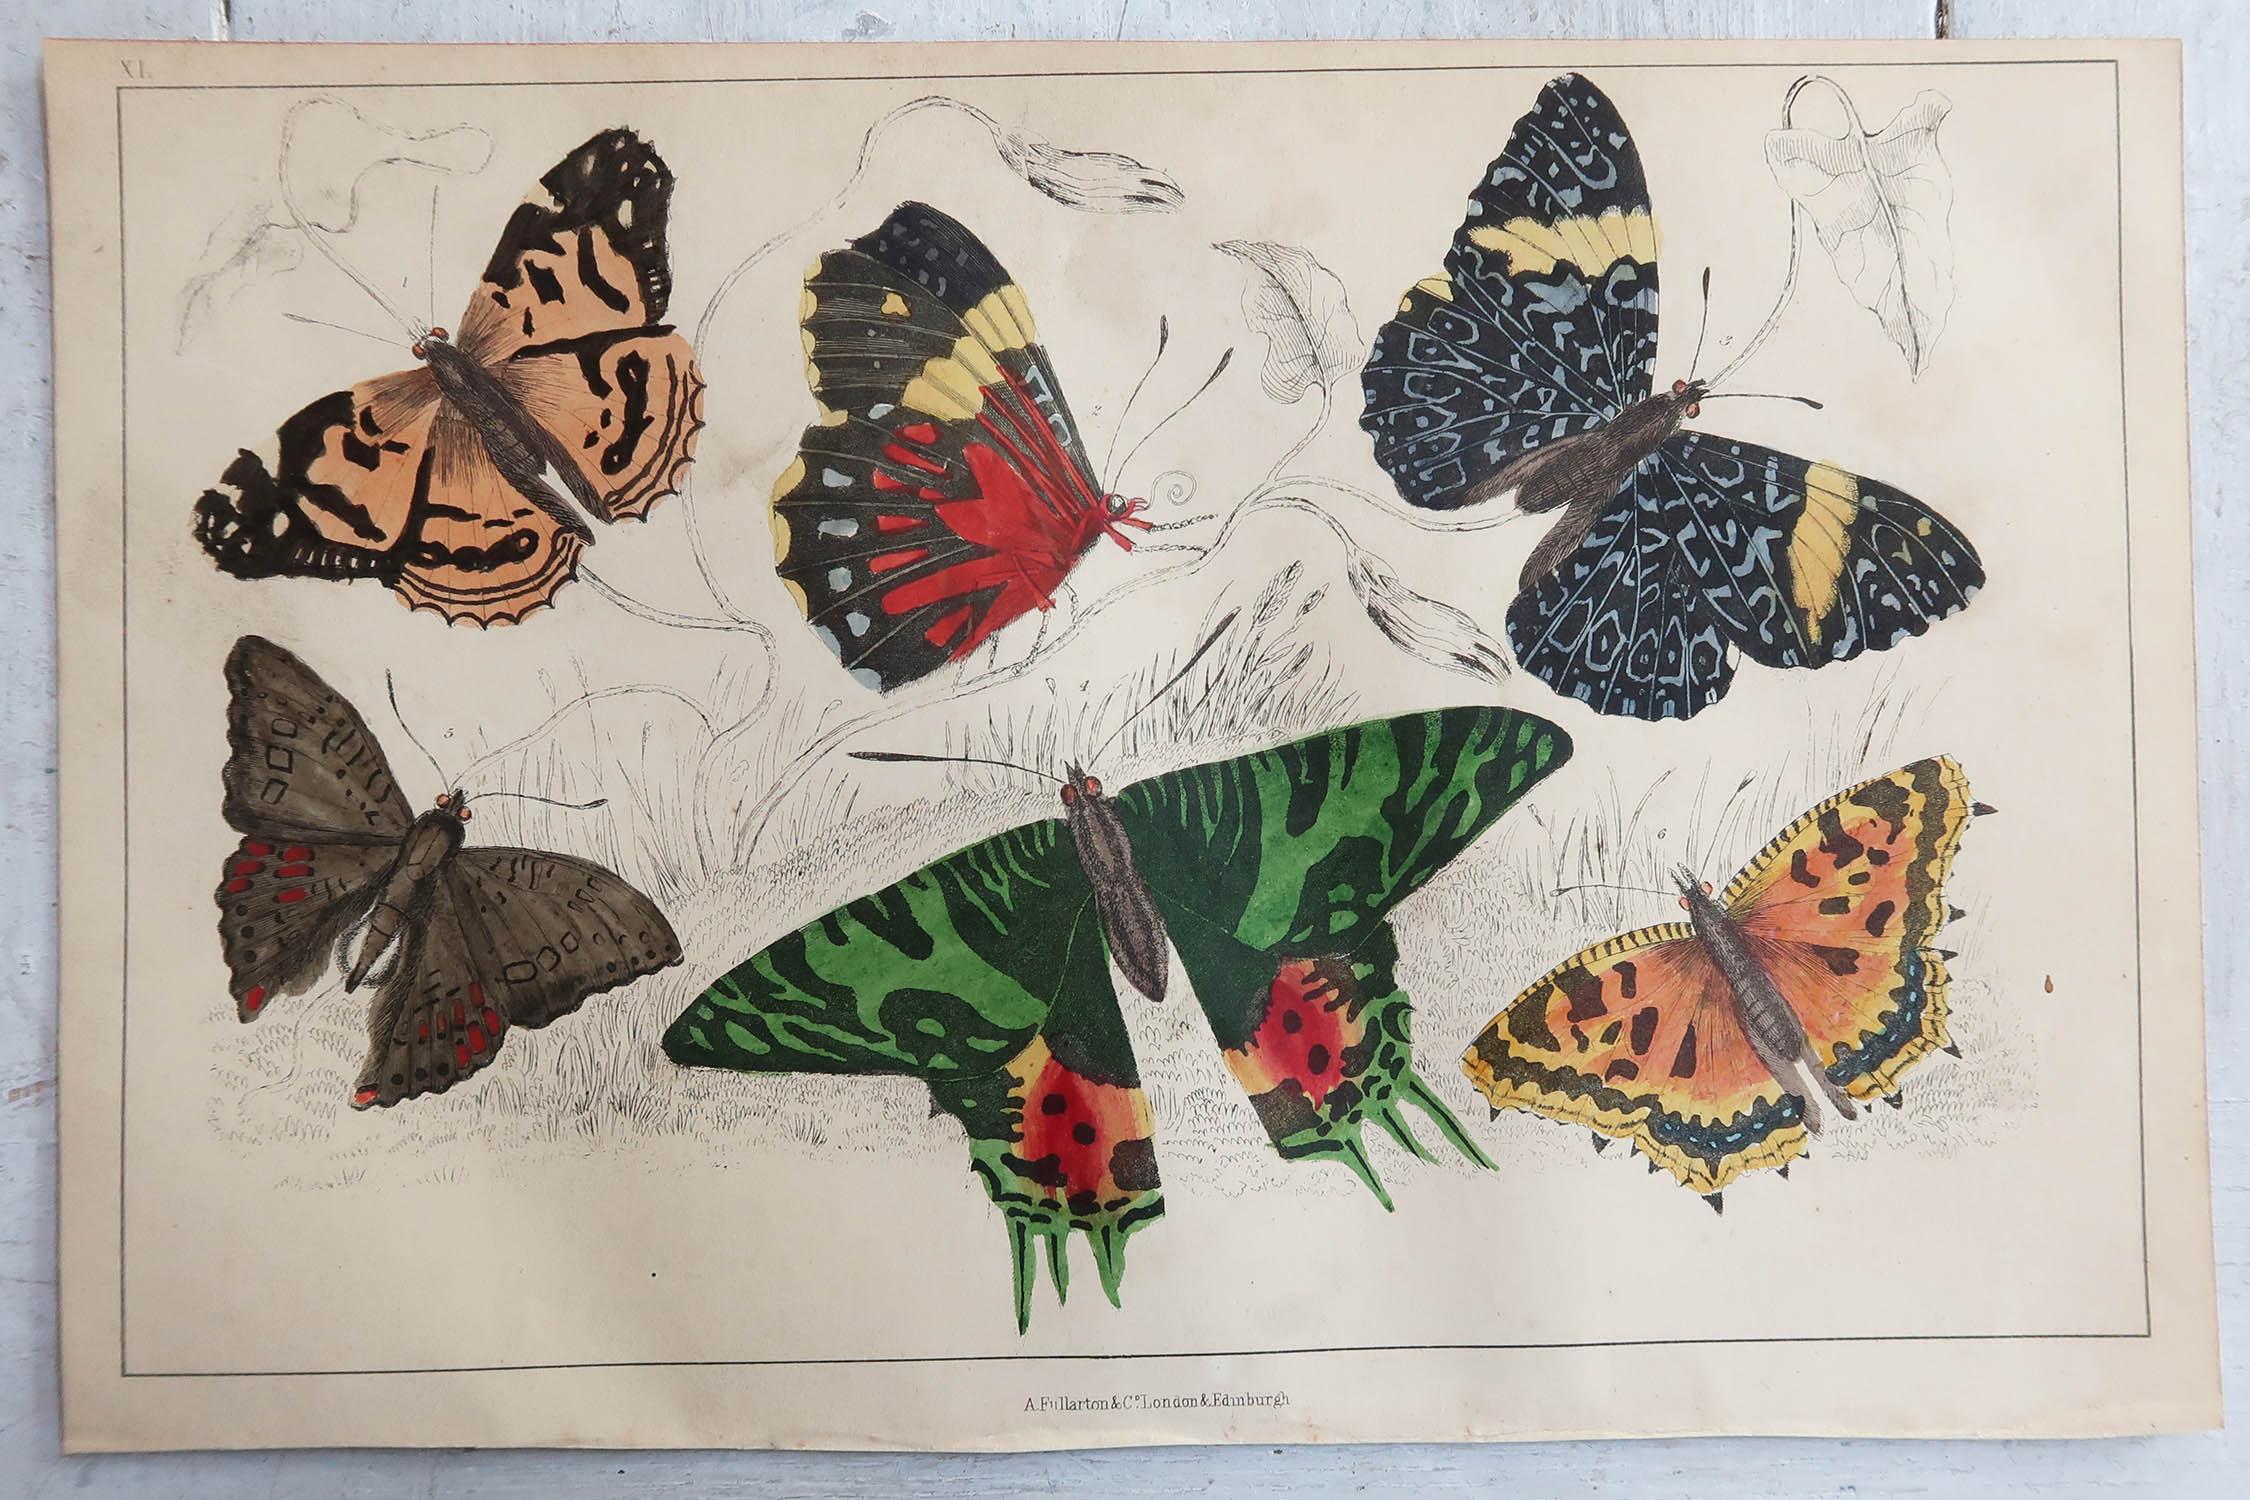 English Original Antique Print of Butterflies, 1847, Unframed